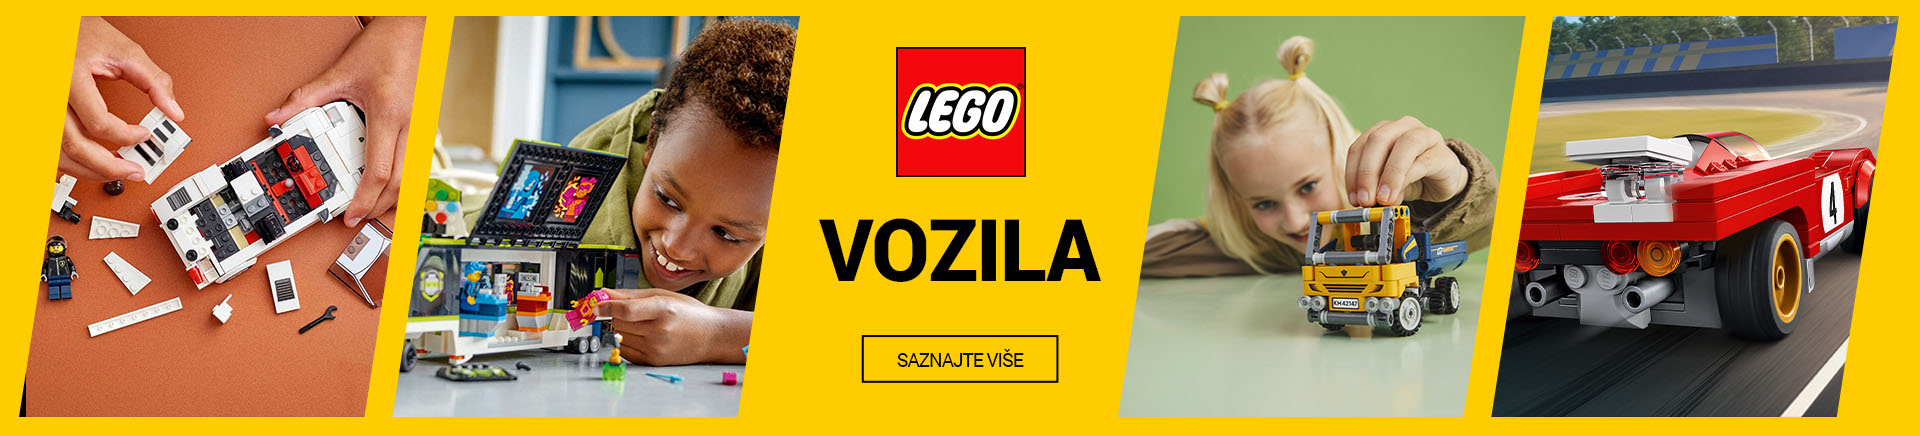 ME Lego VOZILA TABLET 768 X 436.jpg